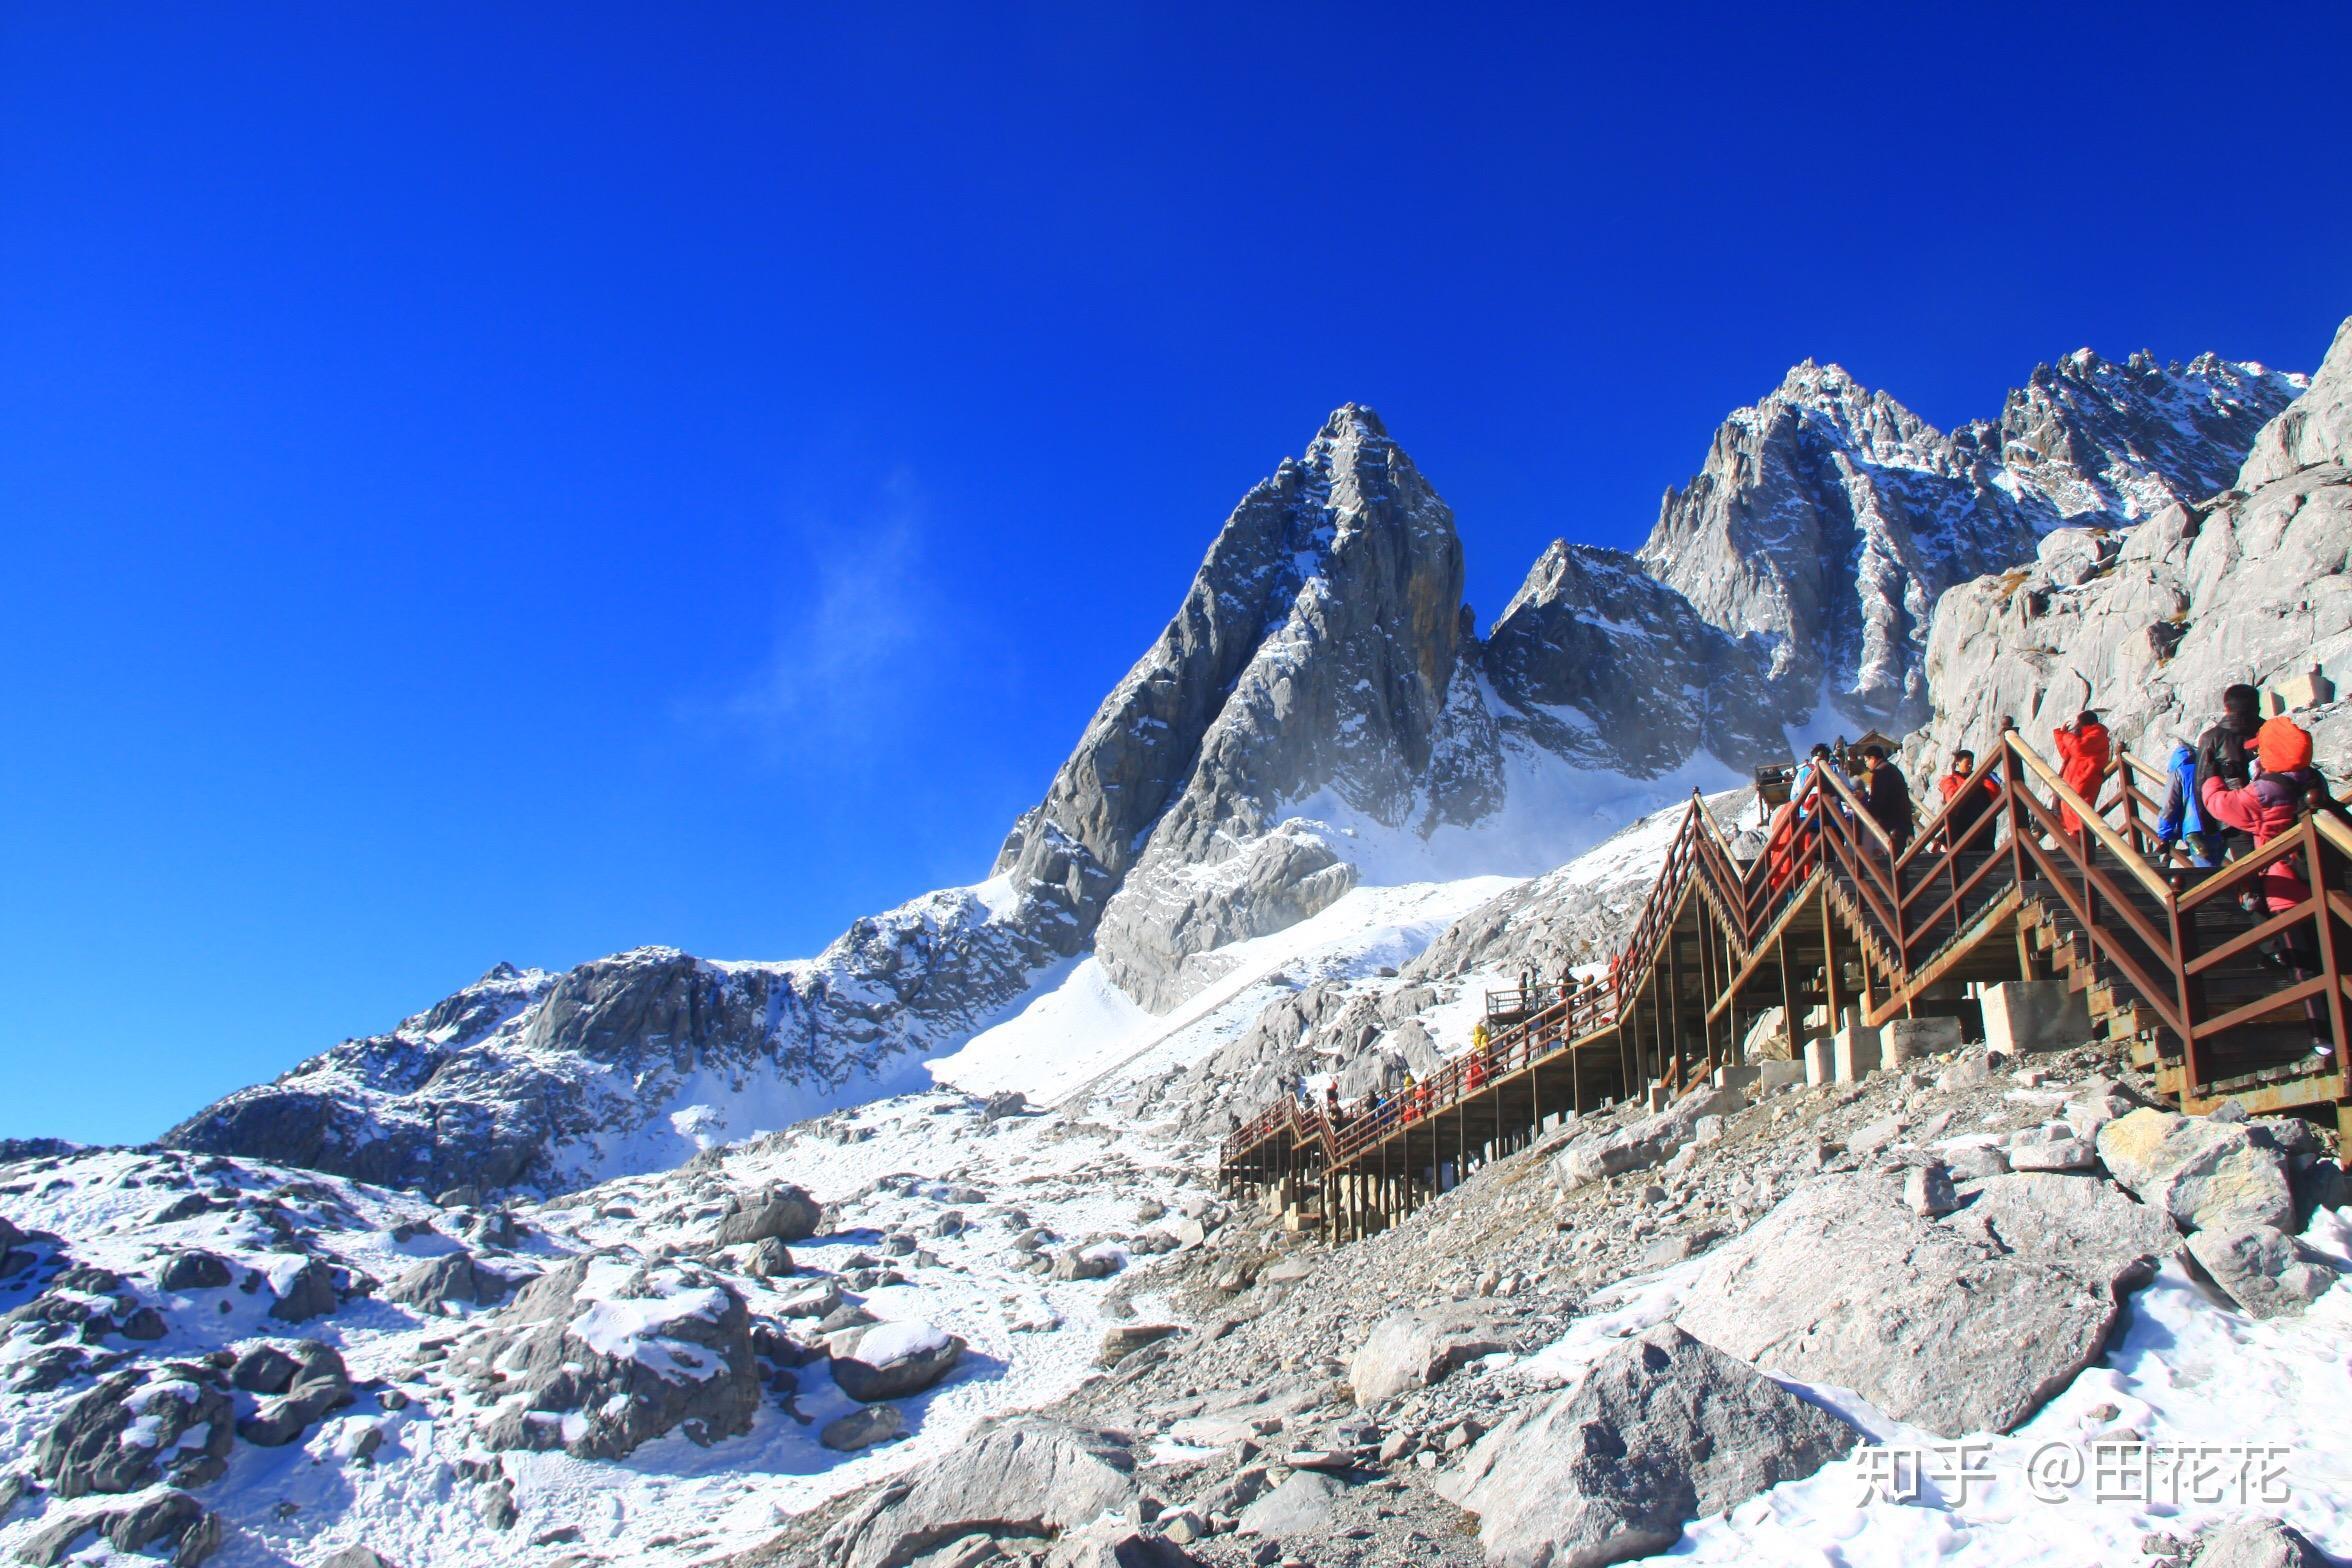 玉龙雪山, 是国家级重点风景名胜区, 长江以南的第一高峰